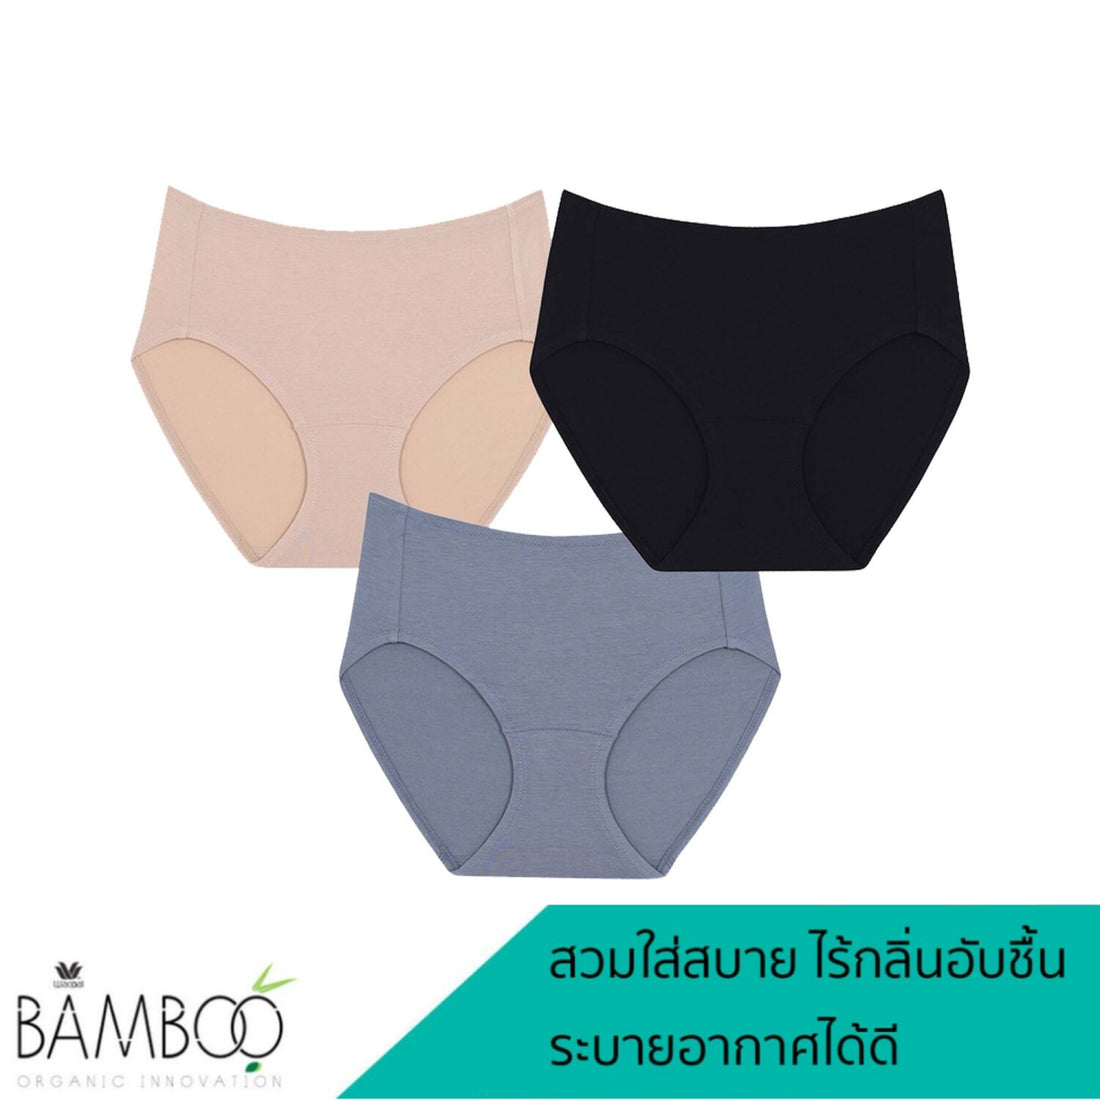 Wacoal Bamboo panty กางเกงในเยื่อไผ่ ระบายอากาศดี รูปแบบครึ่งตัว Set 3 ชิ้น รุ่น WU3T12 คละสี (สีดำ-สีเนื้อ-สีเทา)